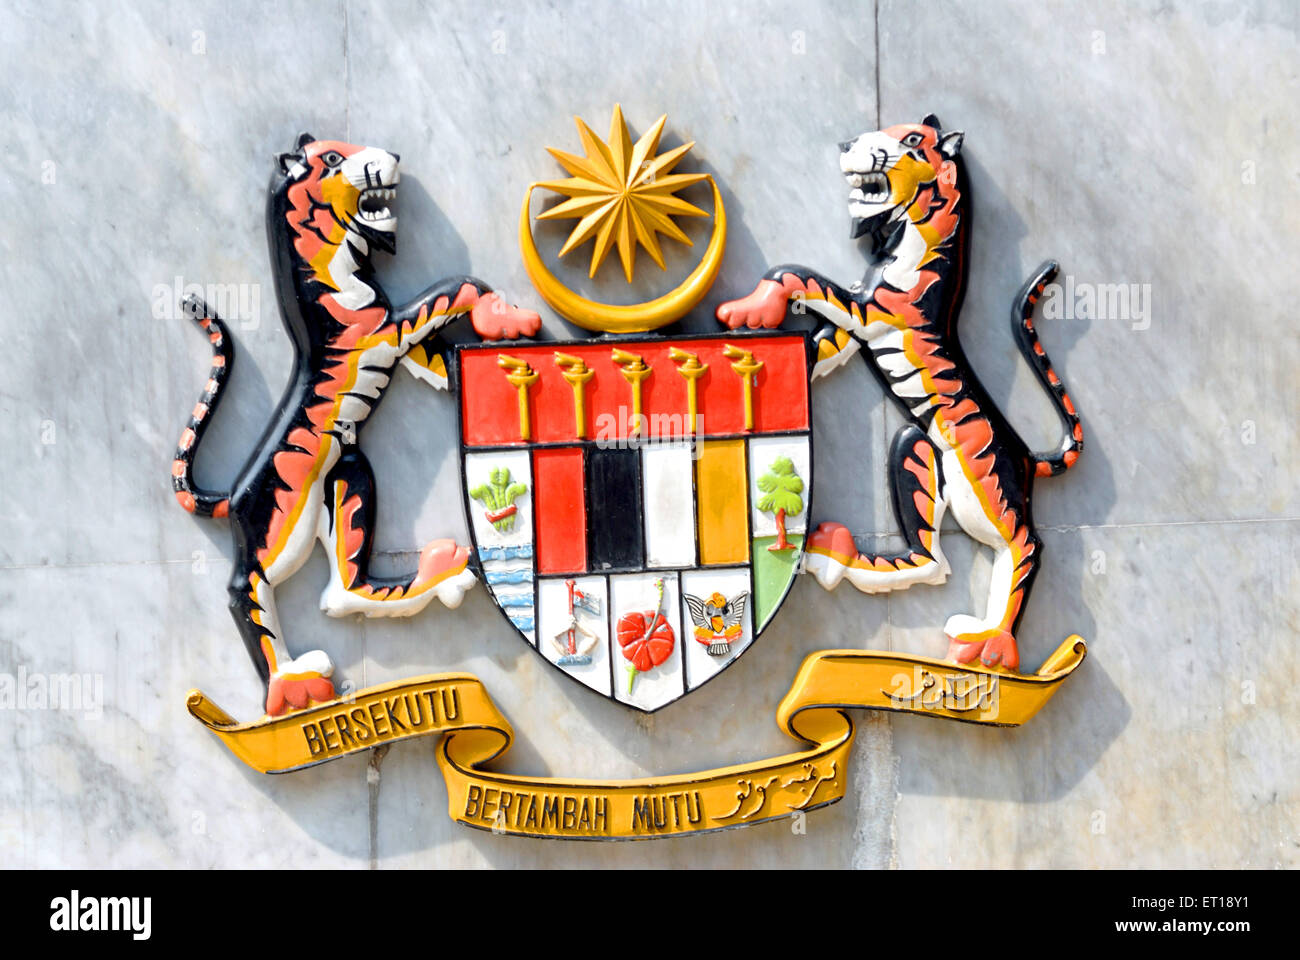 Armoiries, emblème, symbole national, logo, Malaisie, Asie du Sud-est Banque D'Images